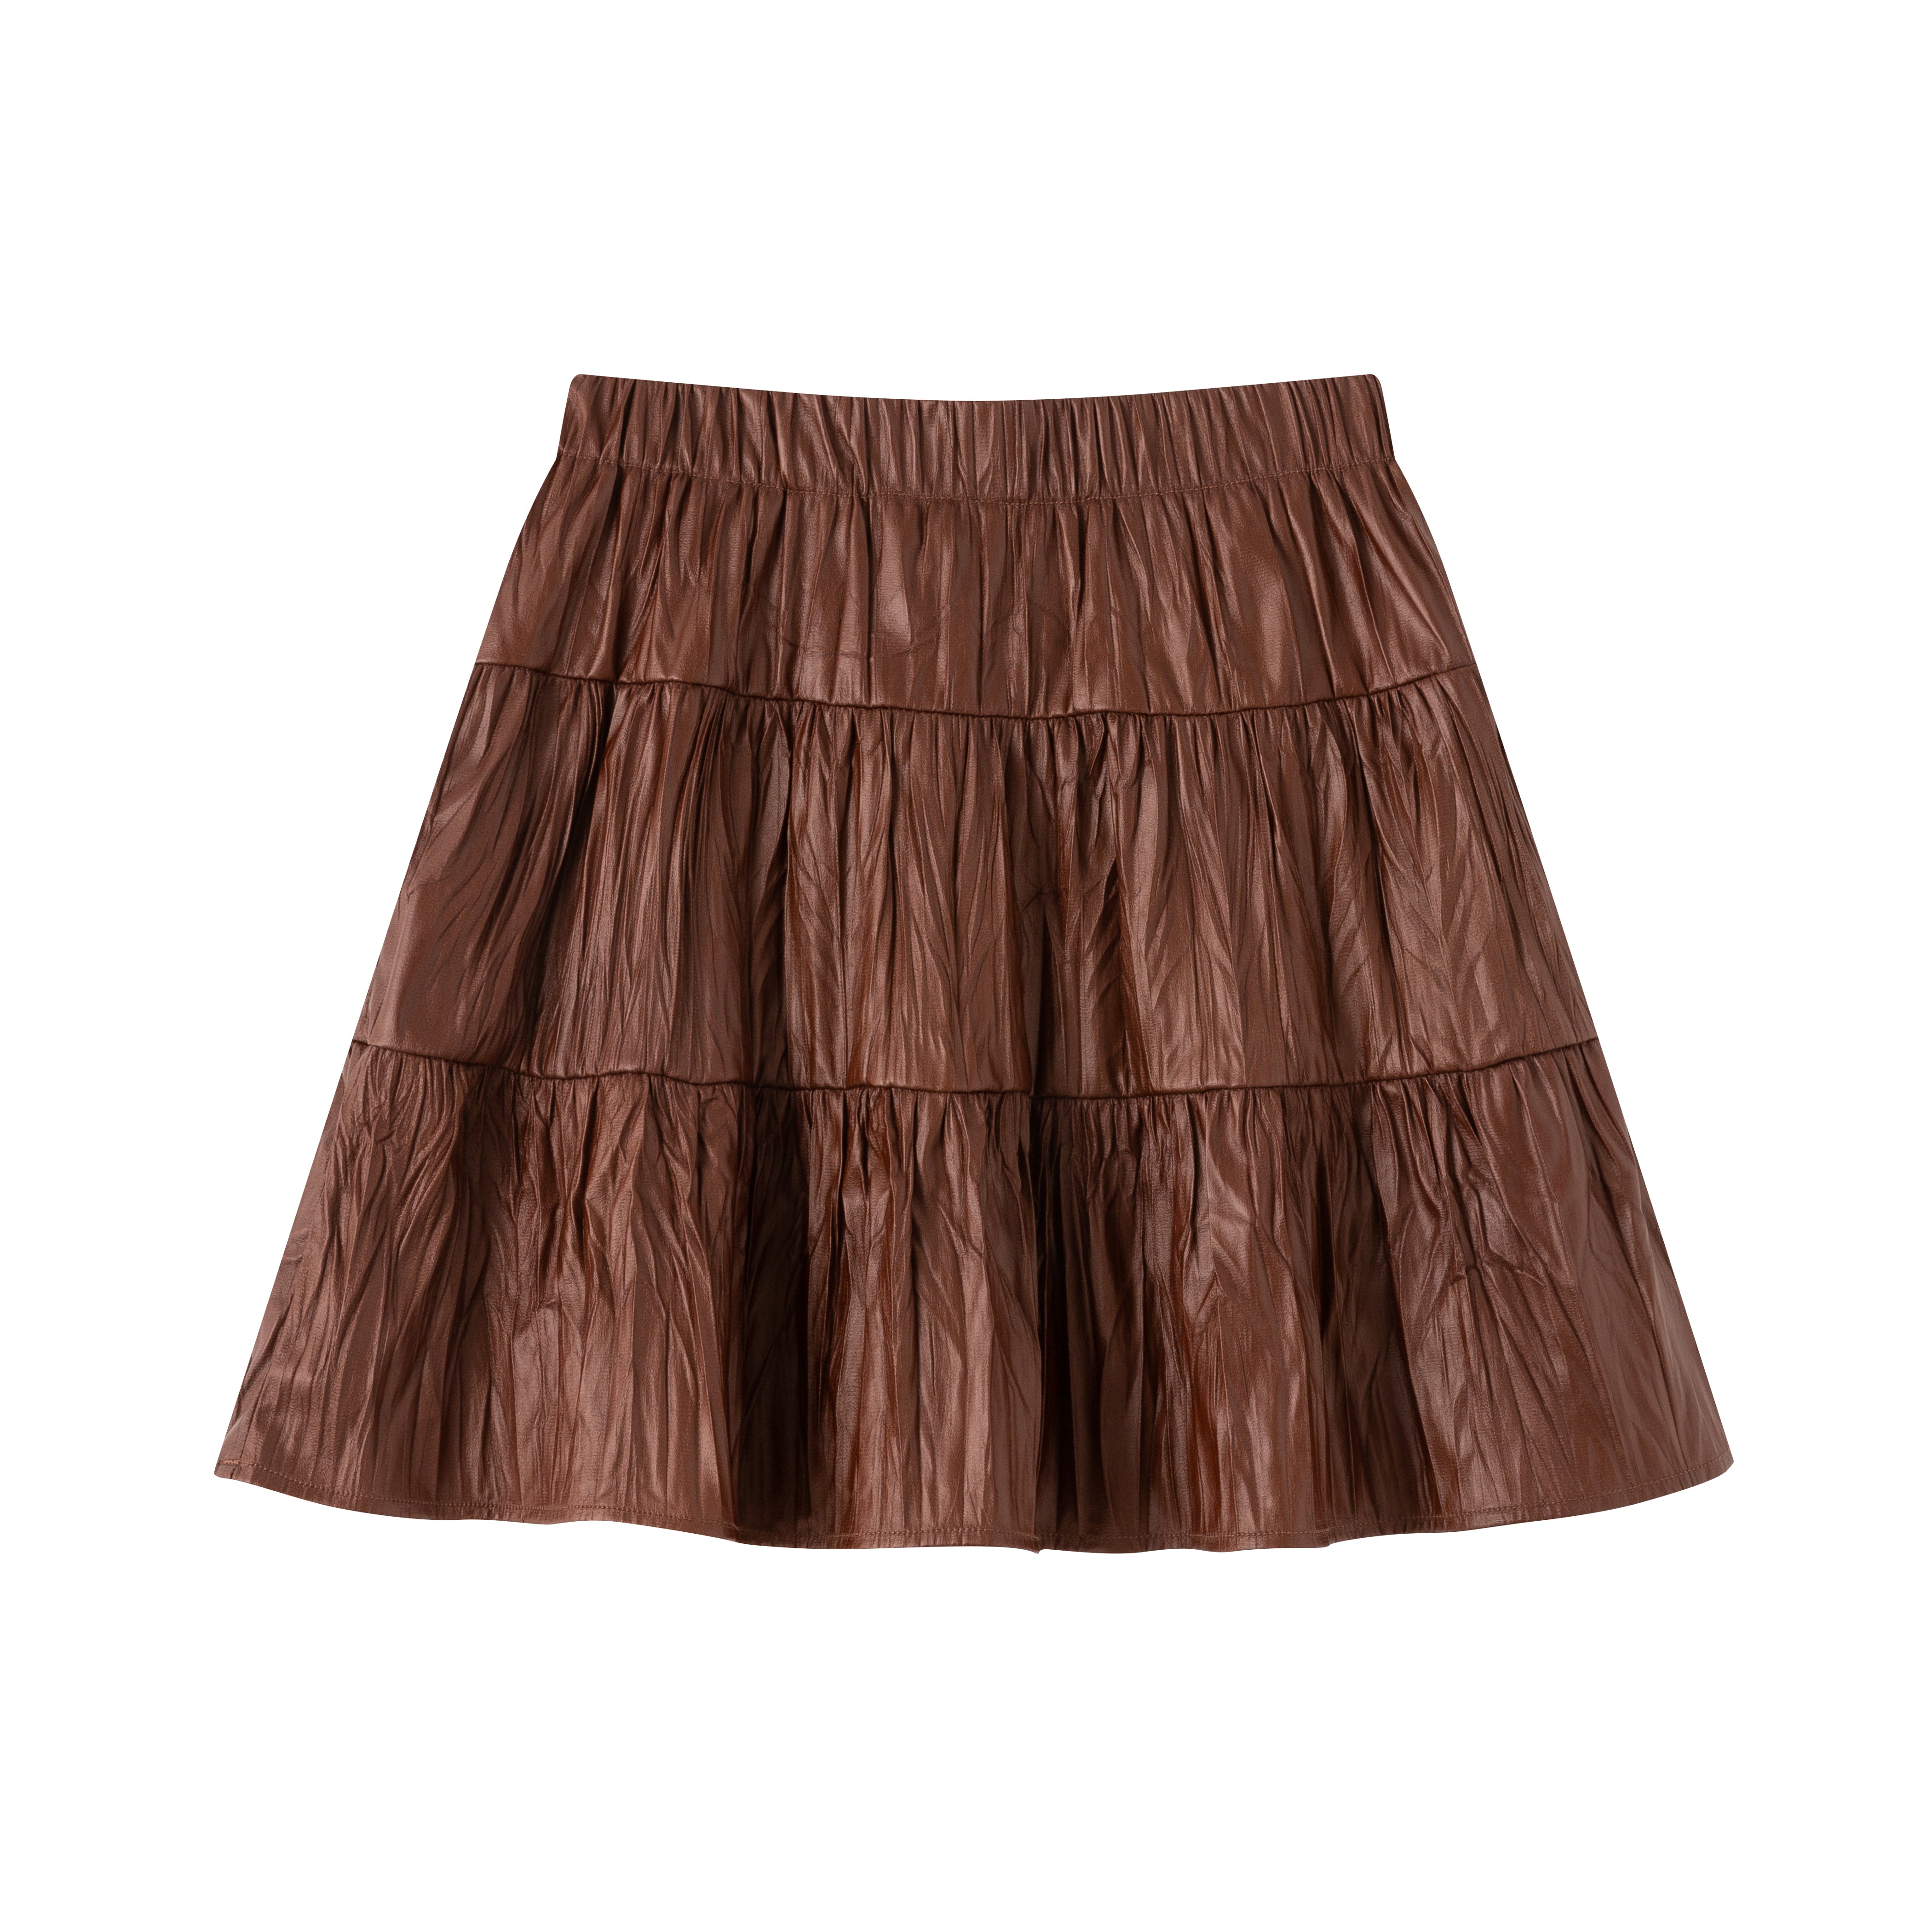 Crinkled A-line skirt